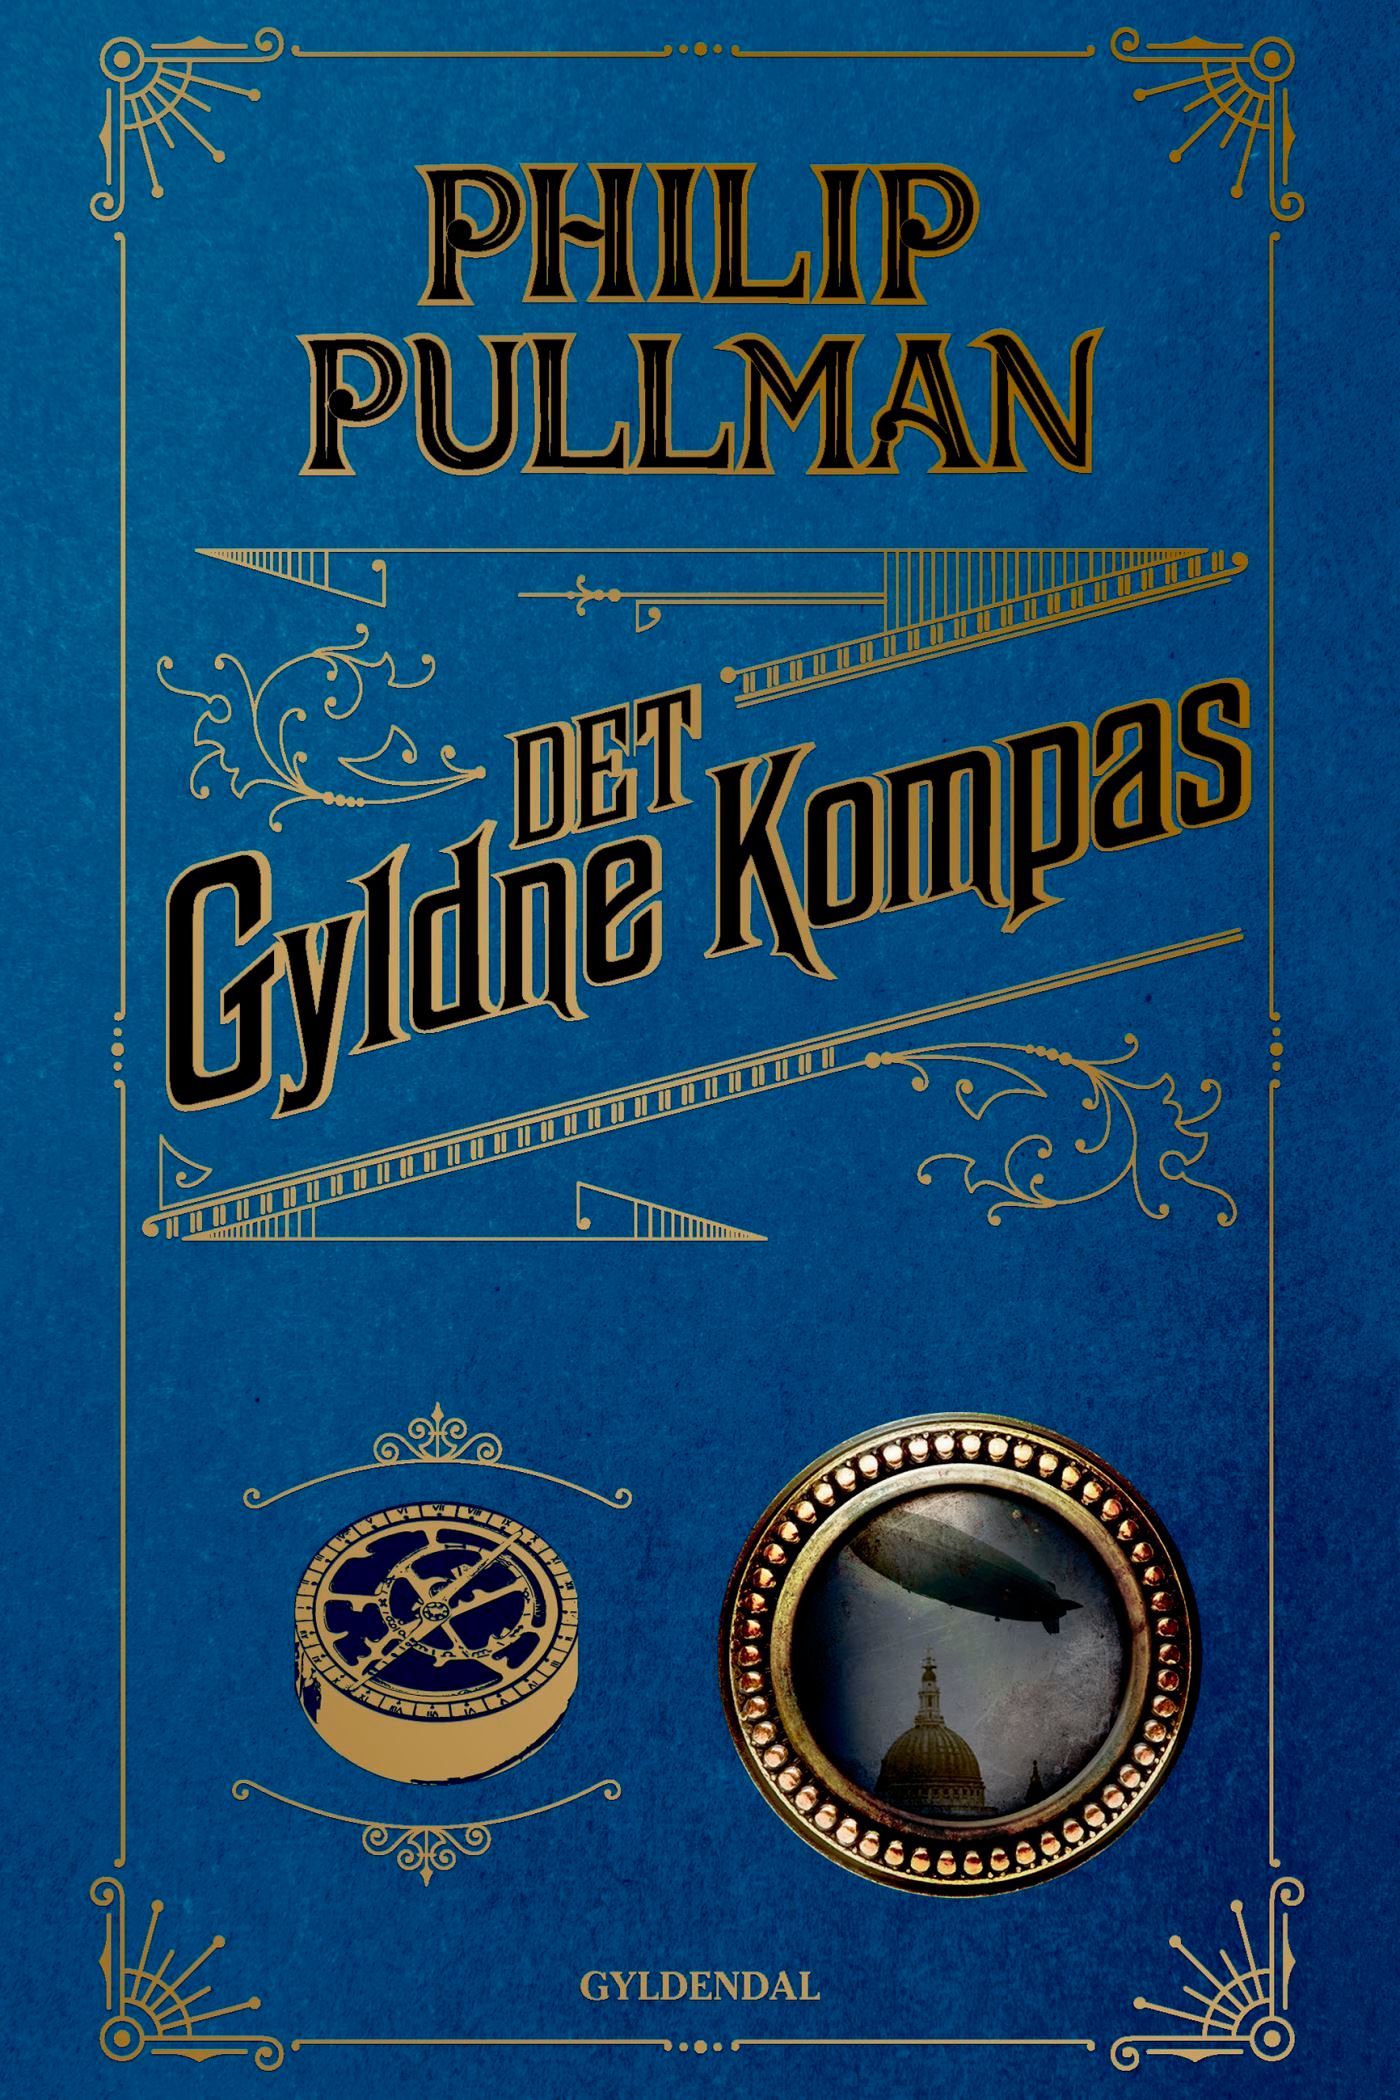 Det gyldne kompas, ljudbok av Philip Pullman